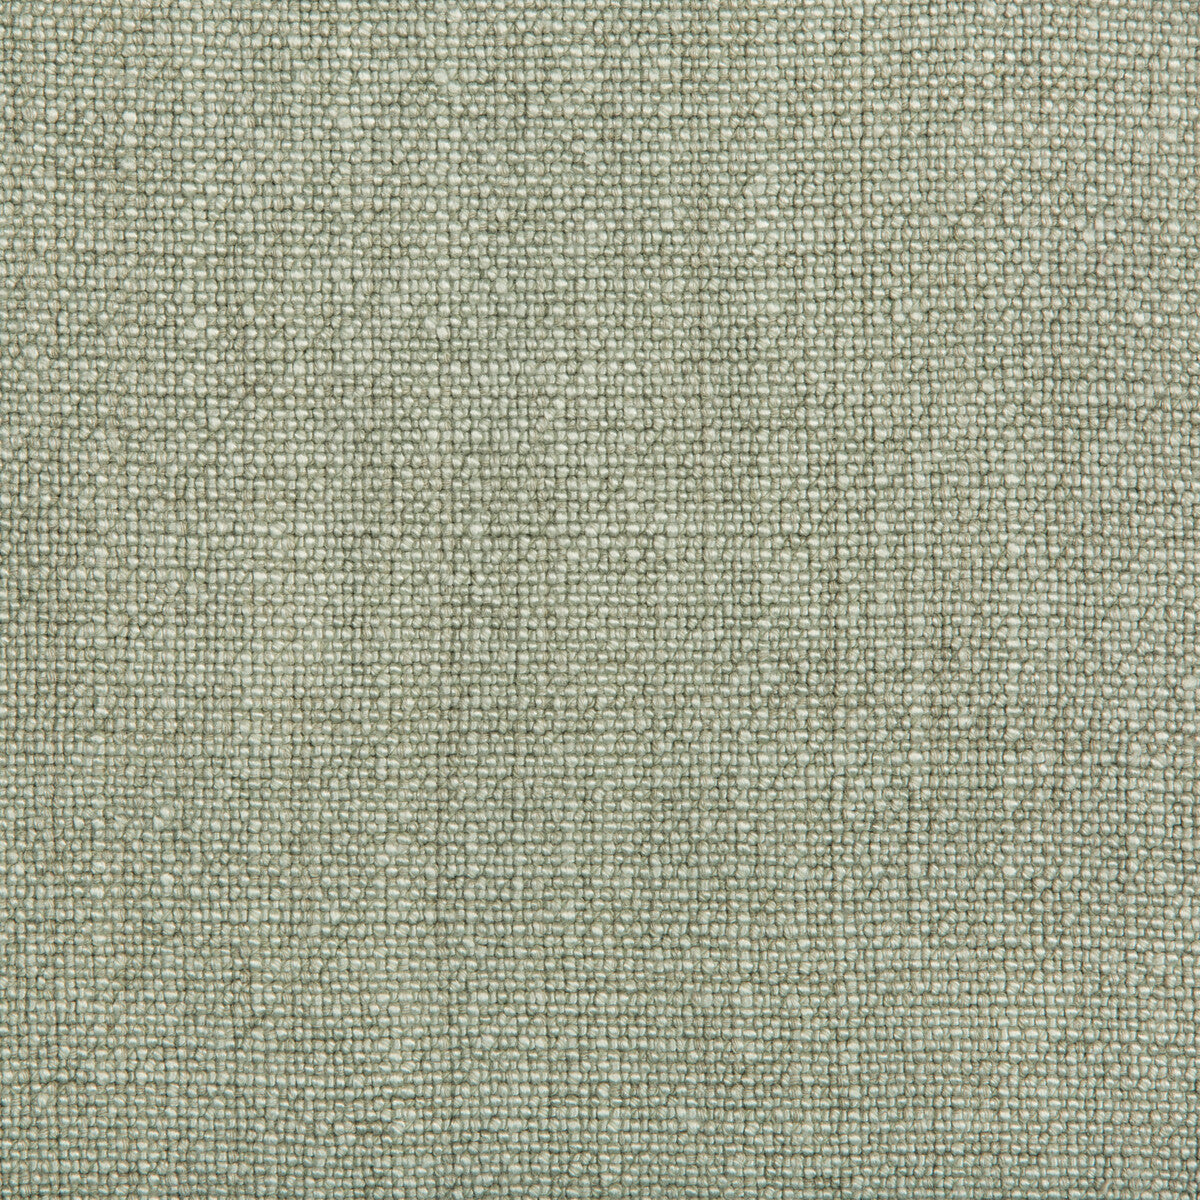 Kravet Basics fabric in 35189-103 color - pattern 35189.103.0 - by Kravet Basics